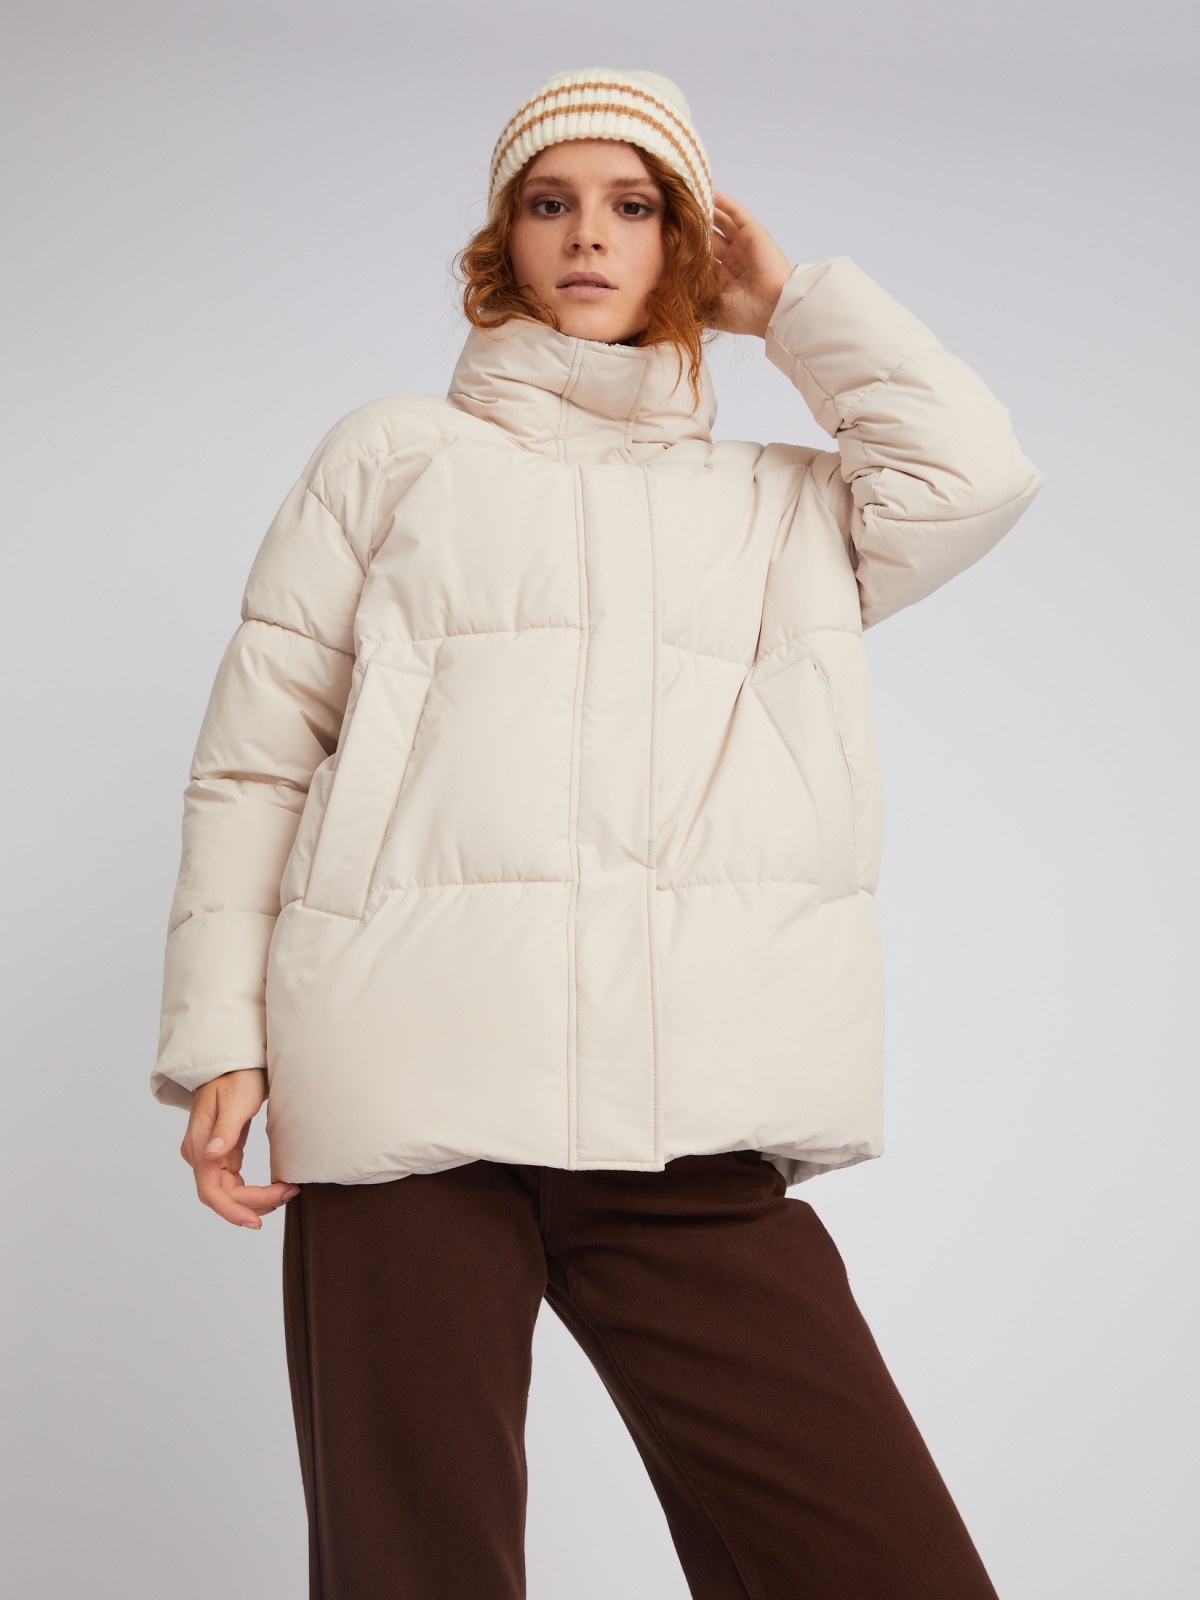 Тёплая стёганая дутая куртка оверсайз силуэта с высоким воротником zolla 023335102074, цвет молоко, размер S - фото 3